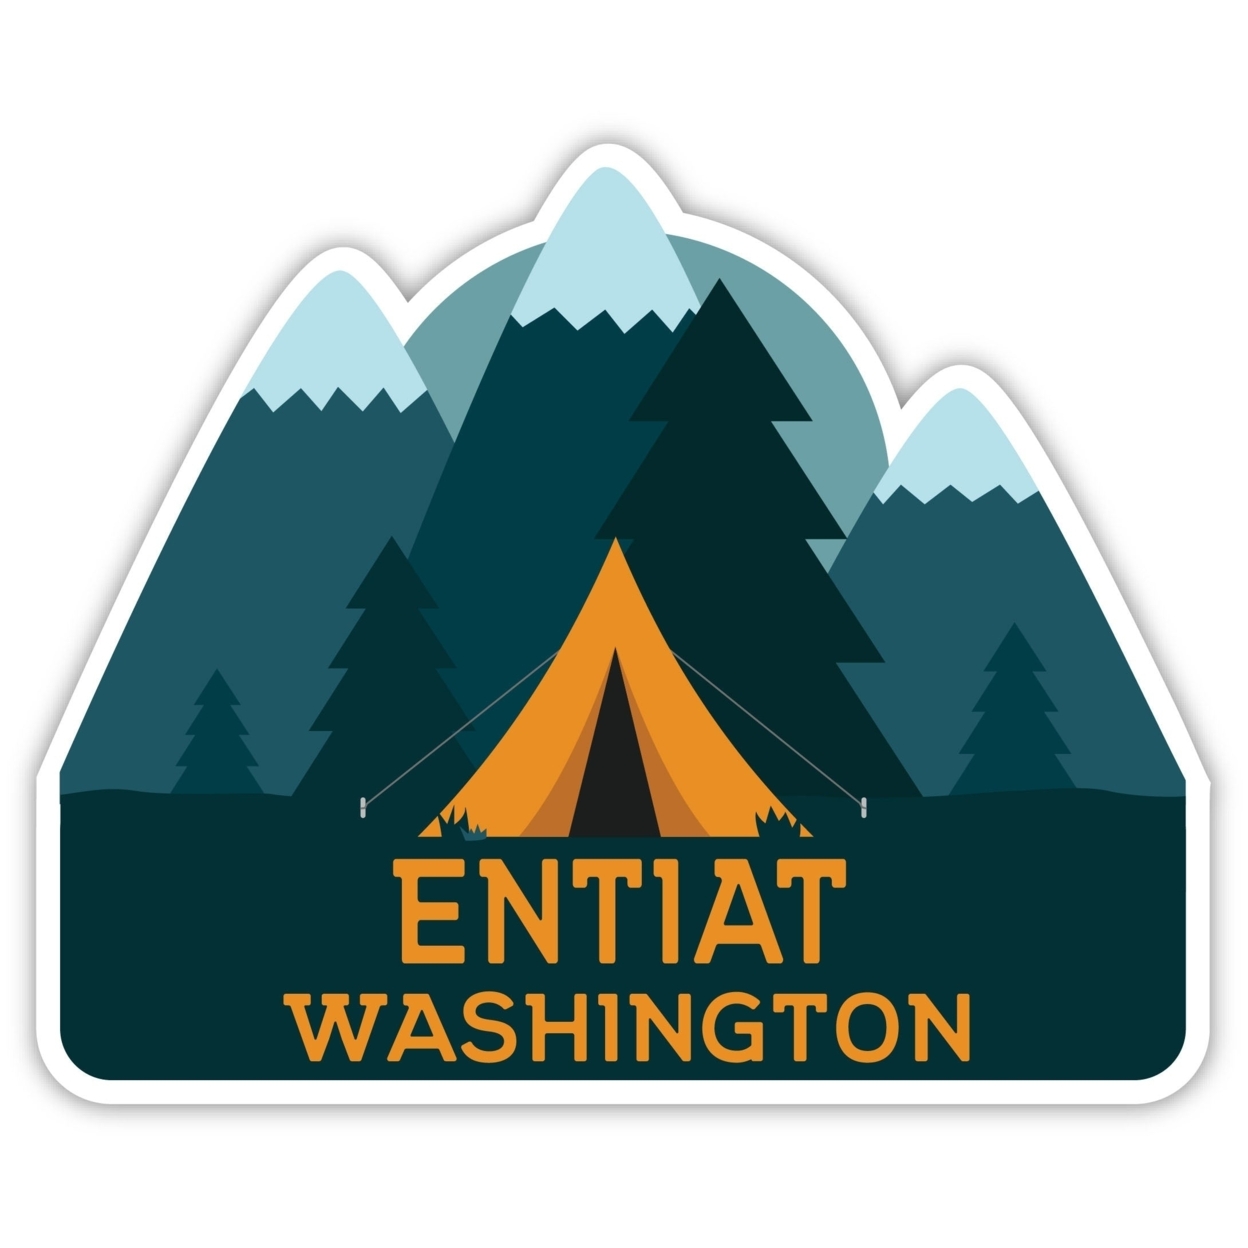 Entiat Washington Souvenir Decorative Stickers (Choose Theme And Size) - Single Unit, 2-Inch, Tent